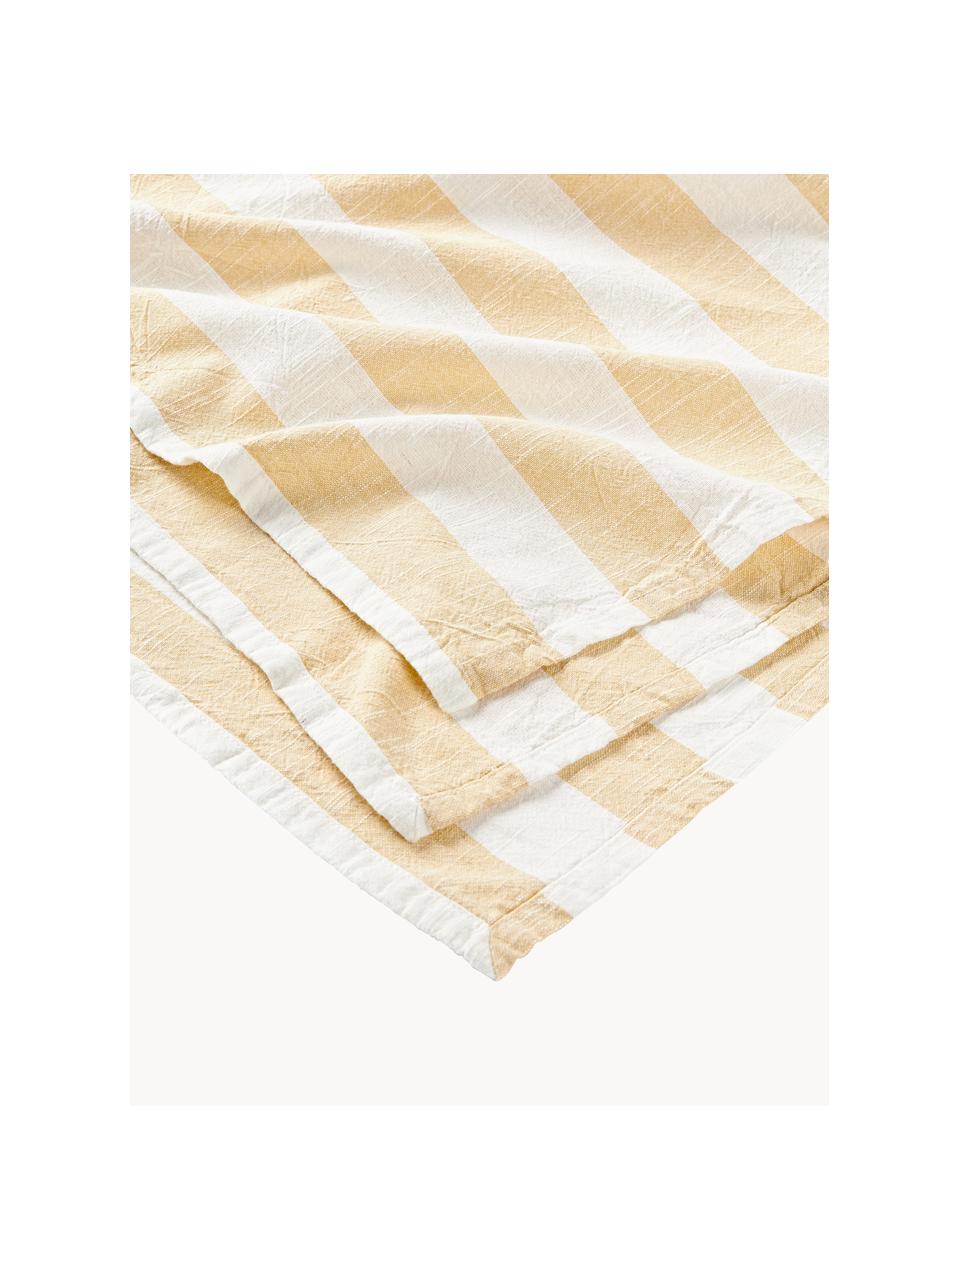 Tovaglia a righe Strip, 100% cotone, Bianco, giallo chiaro, 6-8 persone (Larg. 200 x Lung. 140 cm)